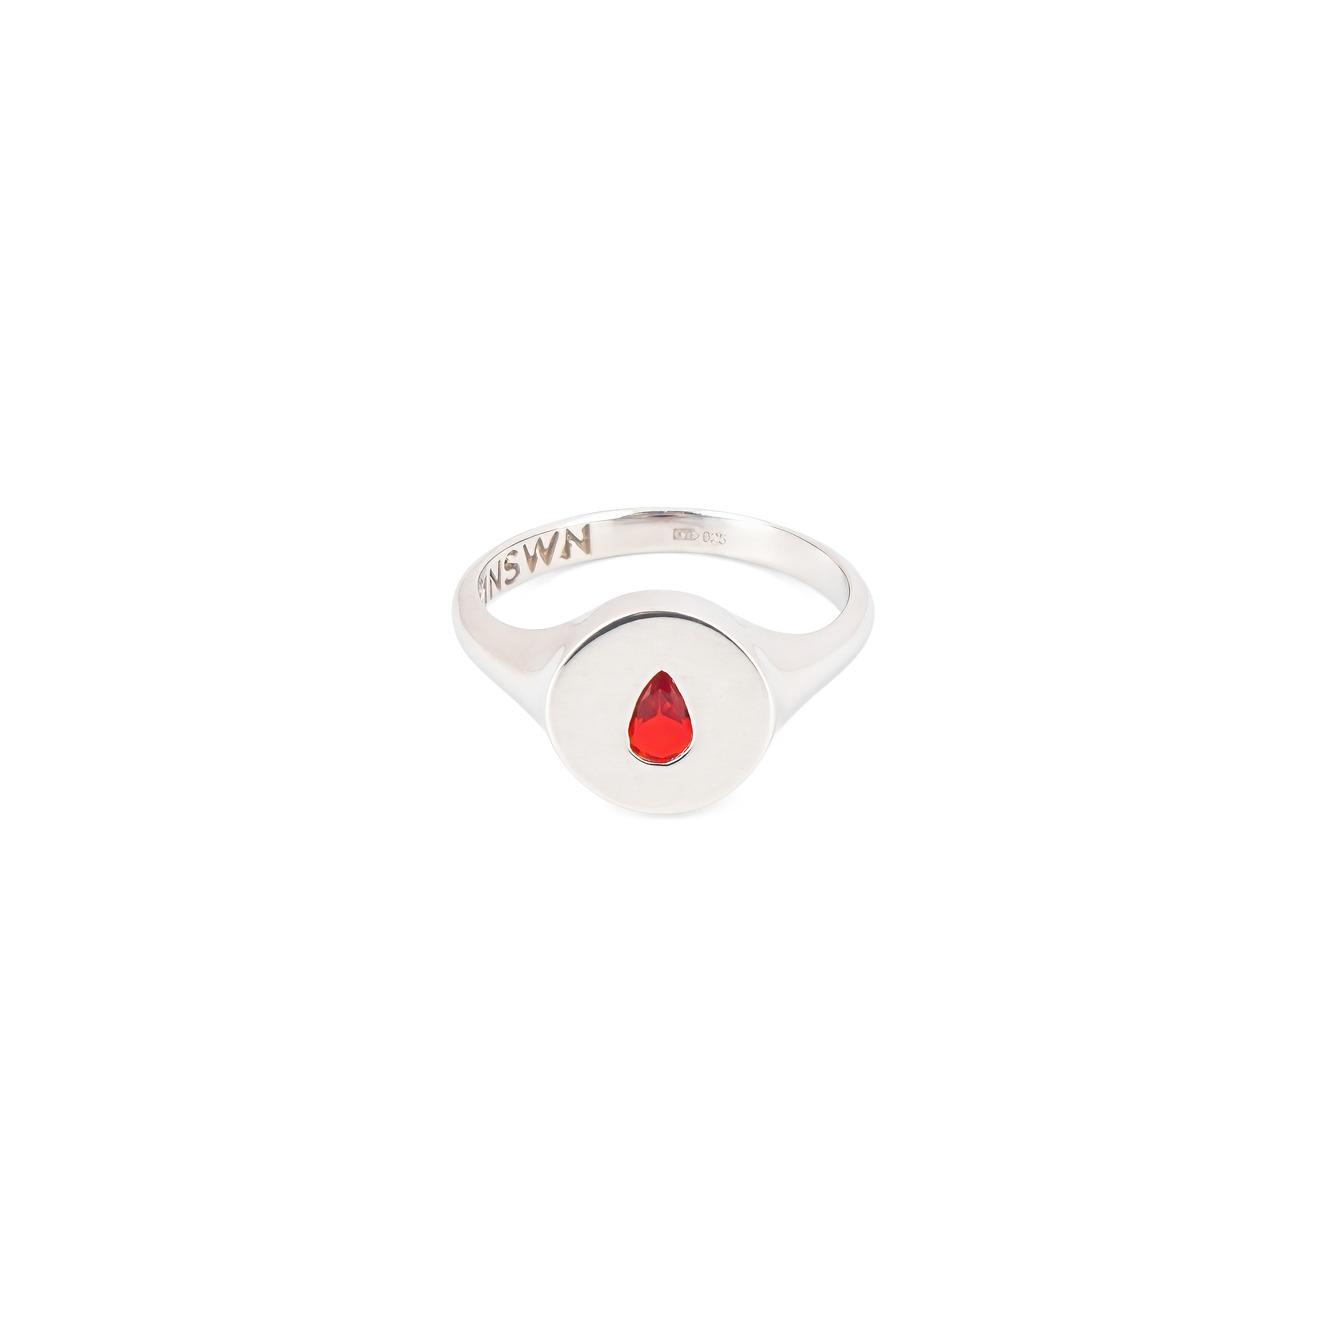 Moonswoon Кольцо-печатка из серебра с красной каплей moonswoon широкое кольцо из серебра с ониксом